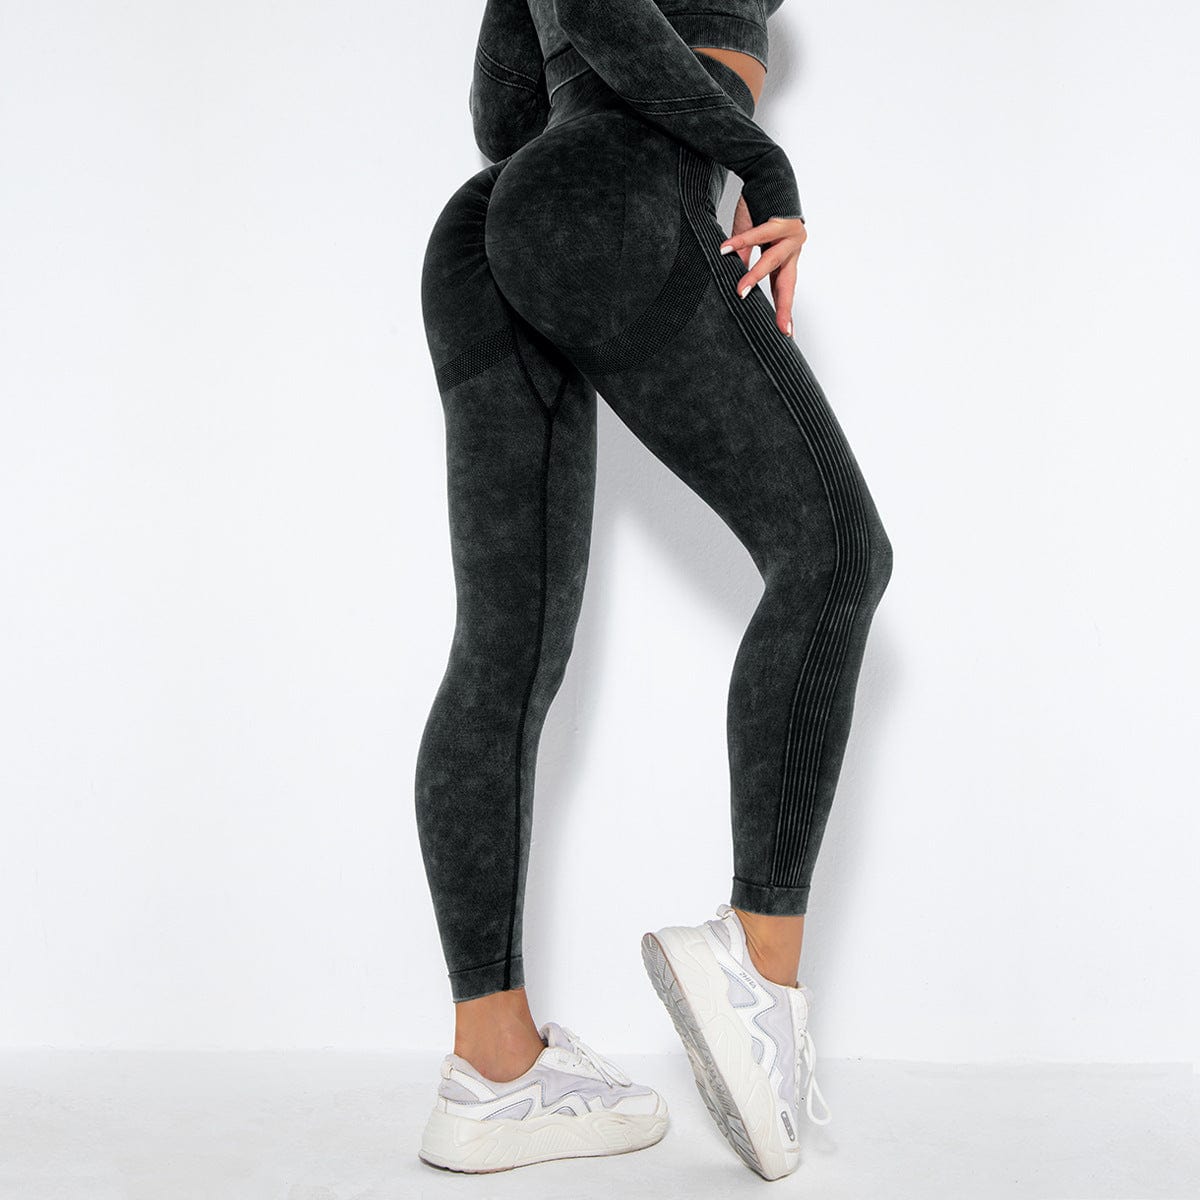 ALLRJ leggings Black / L Women's Acid Wash Fitness Leggings